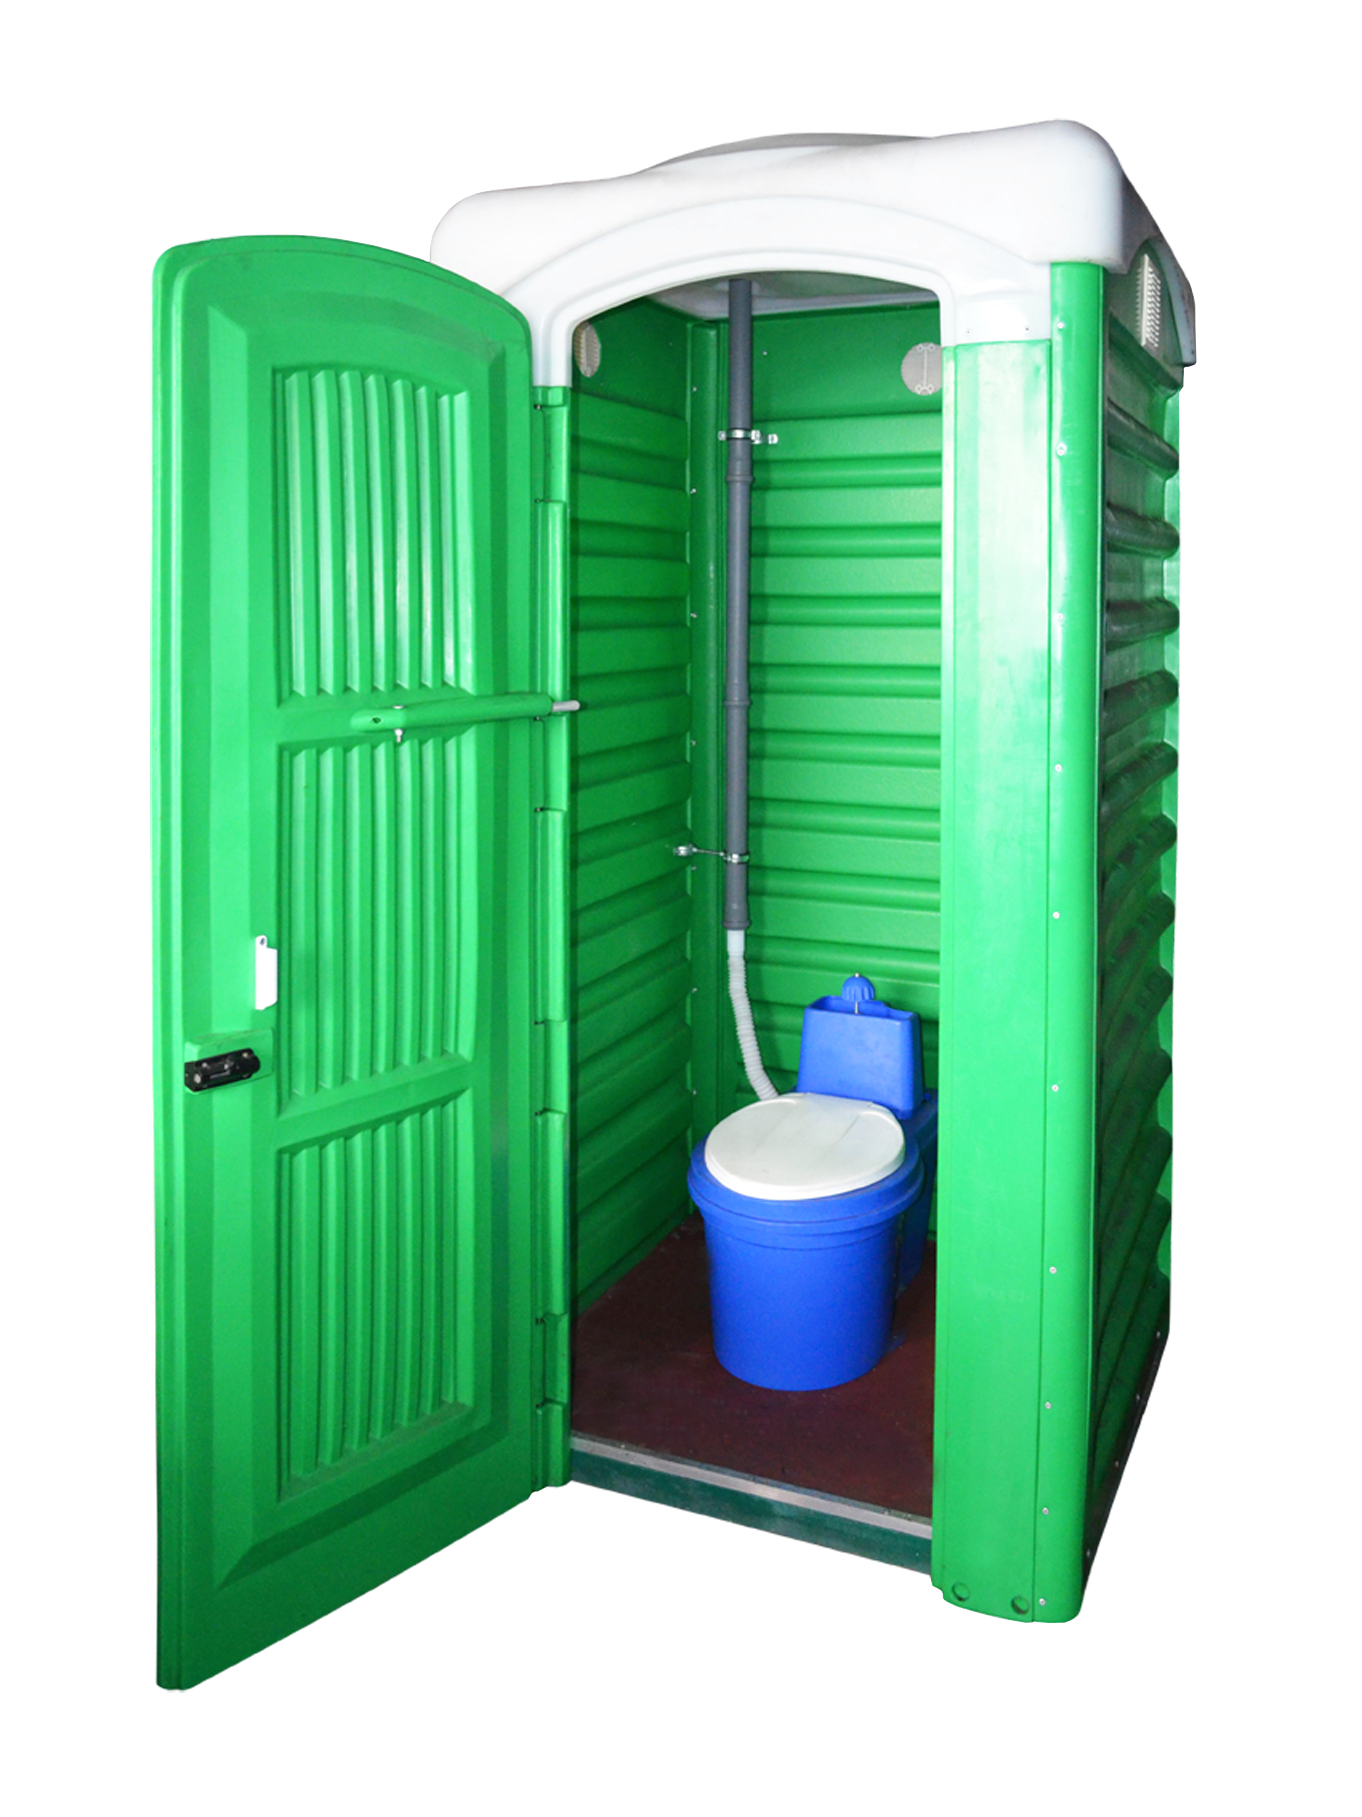 Туалетная кабина для дачи ЭкоСтайл-Ecorg (со стульчаком, на яму) купить недорого на азинский.рф